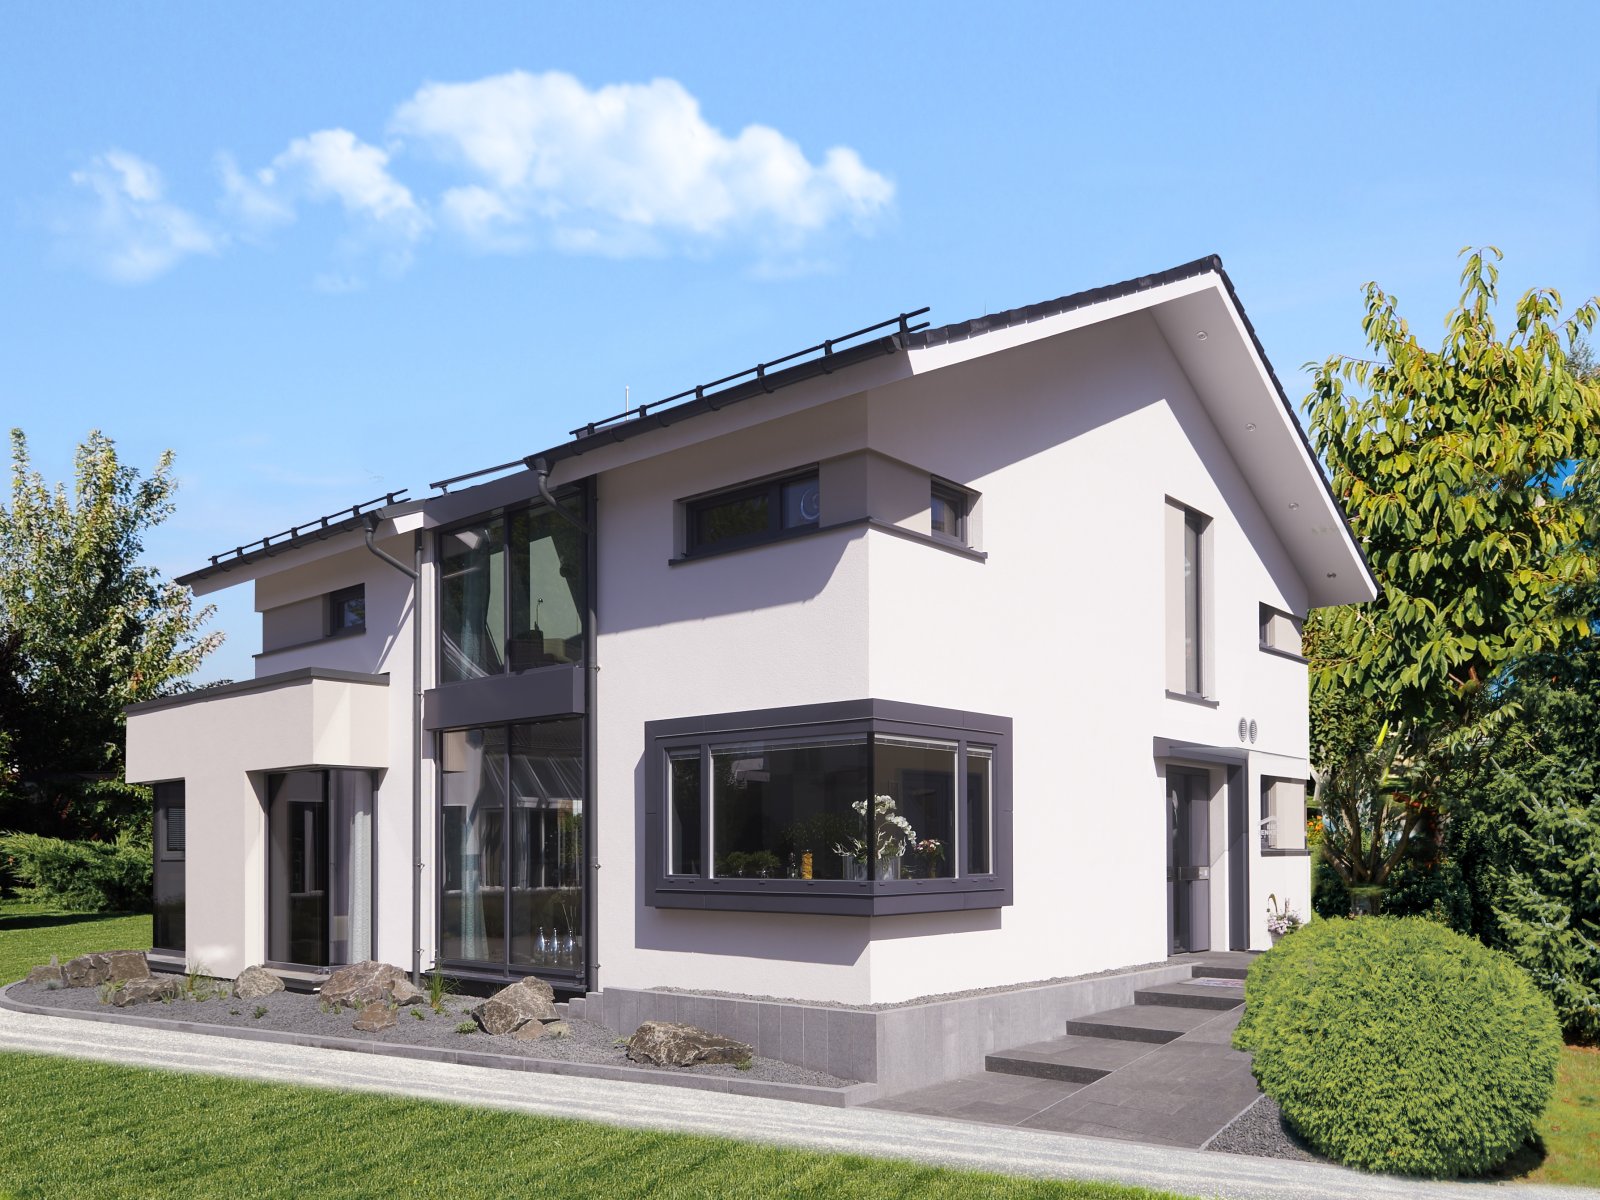 Großes Einfamilienhaus am Seebad-Klausdorf - nutzen Sie die aktuelle Förderung solange sie verfügbar ist! 